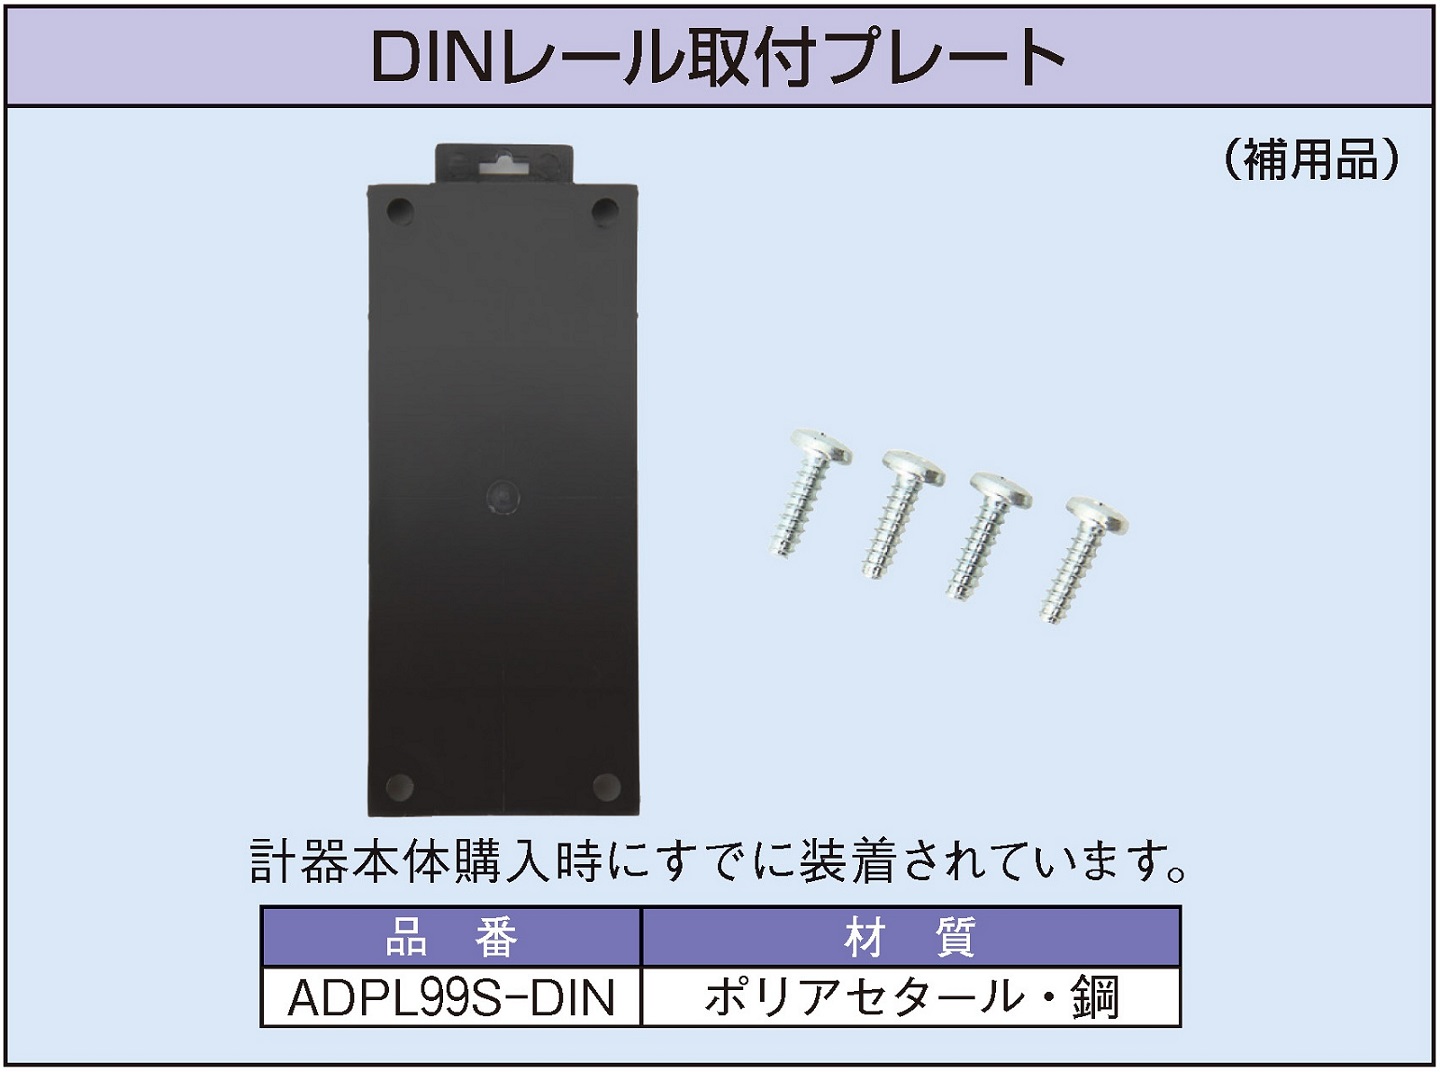 ADPL99S-DIN